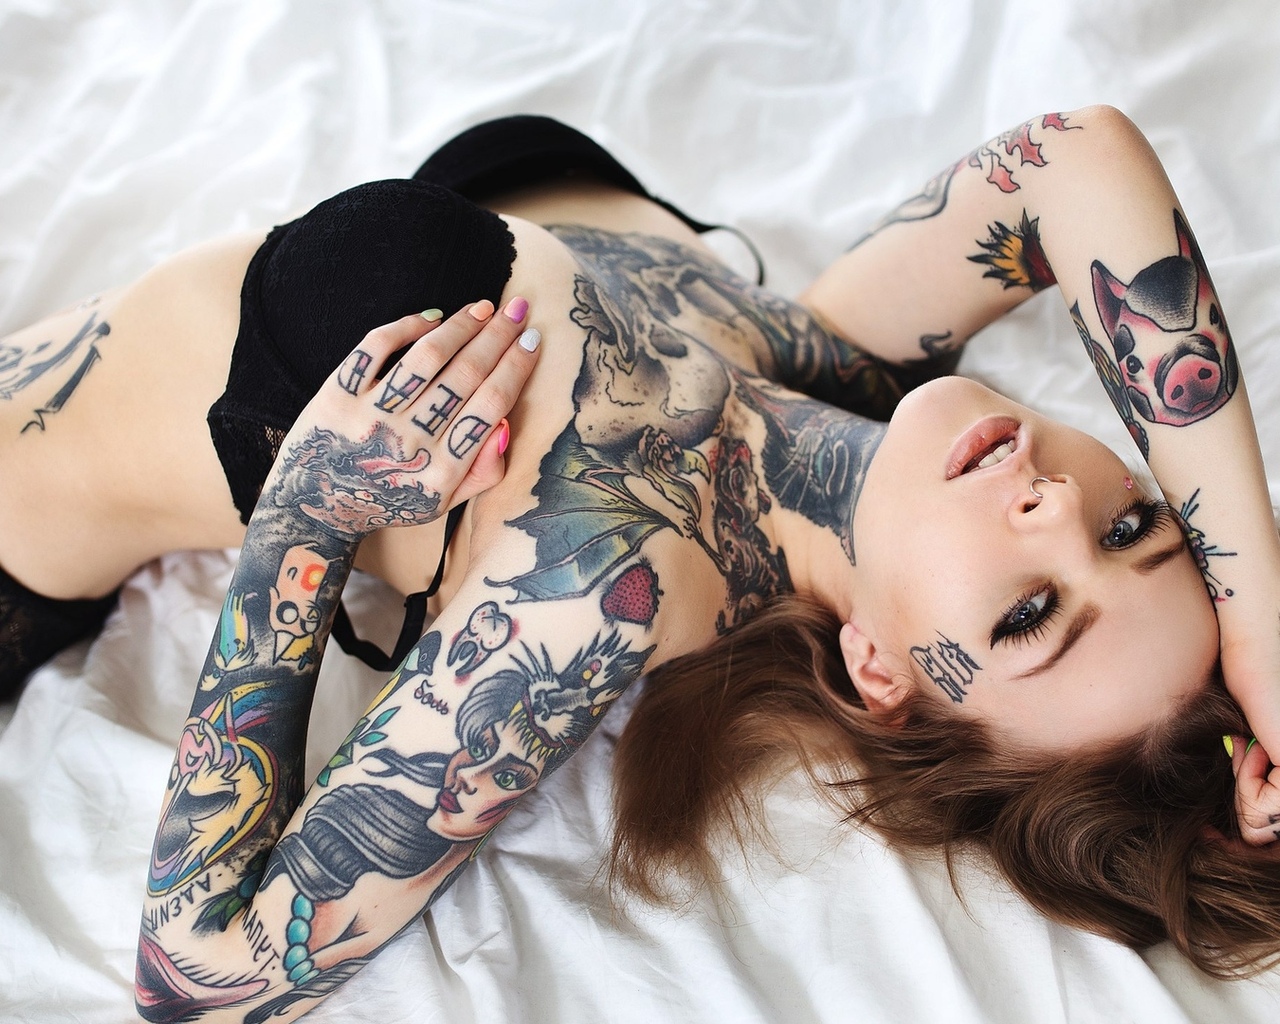 Красивые девушки с татуировкой